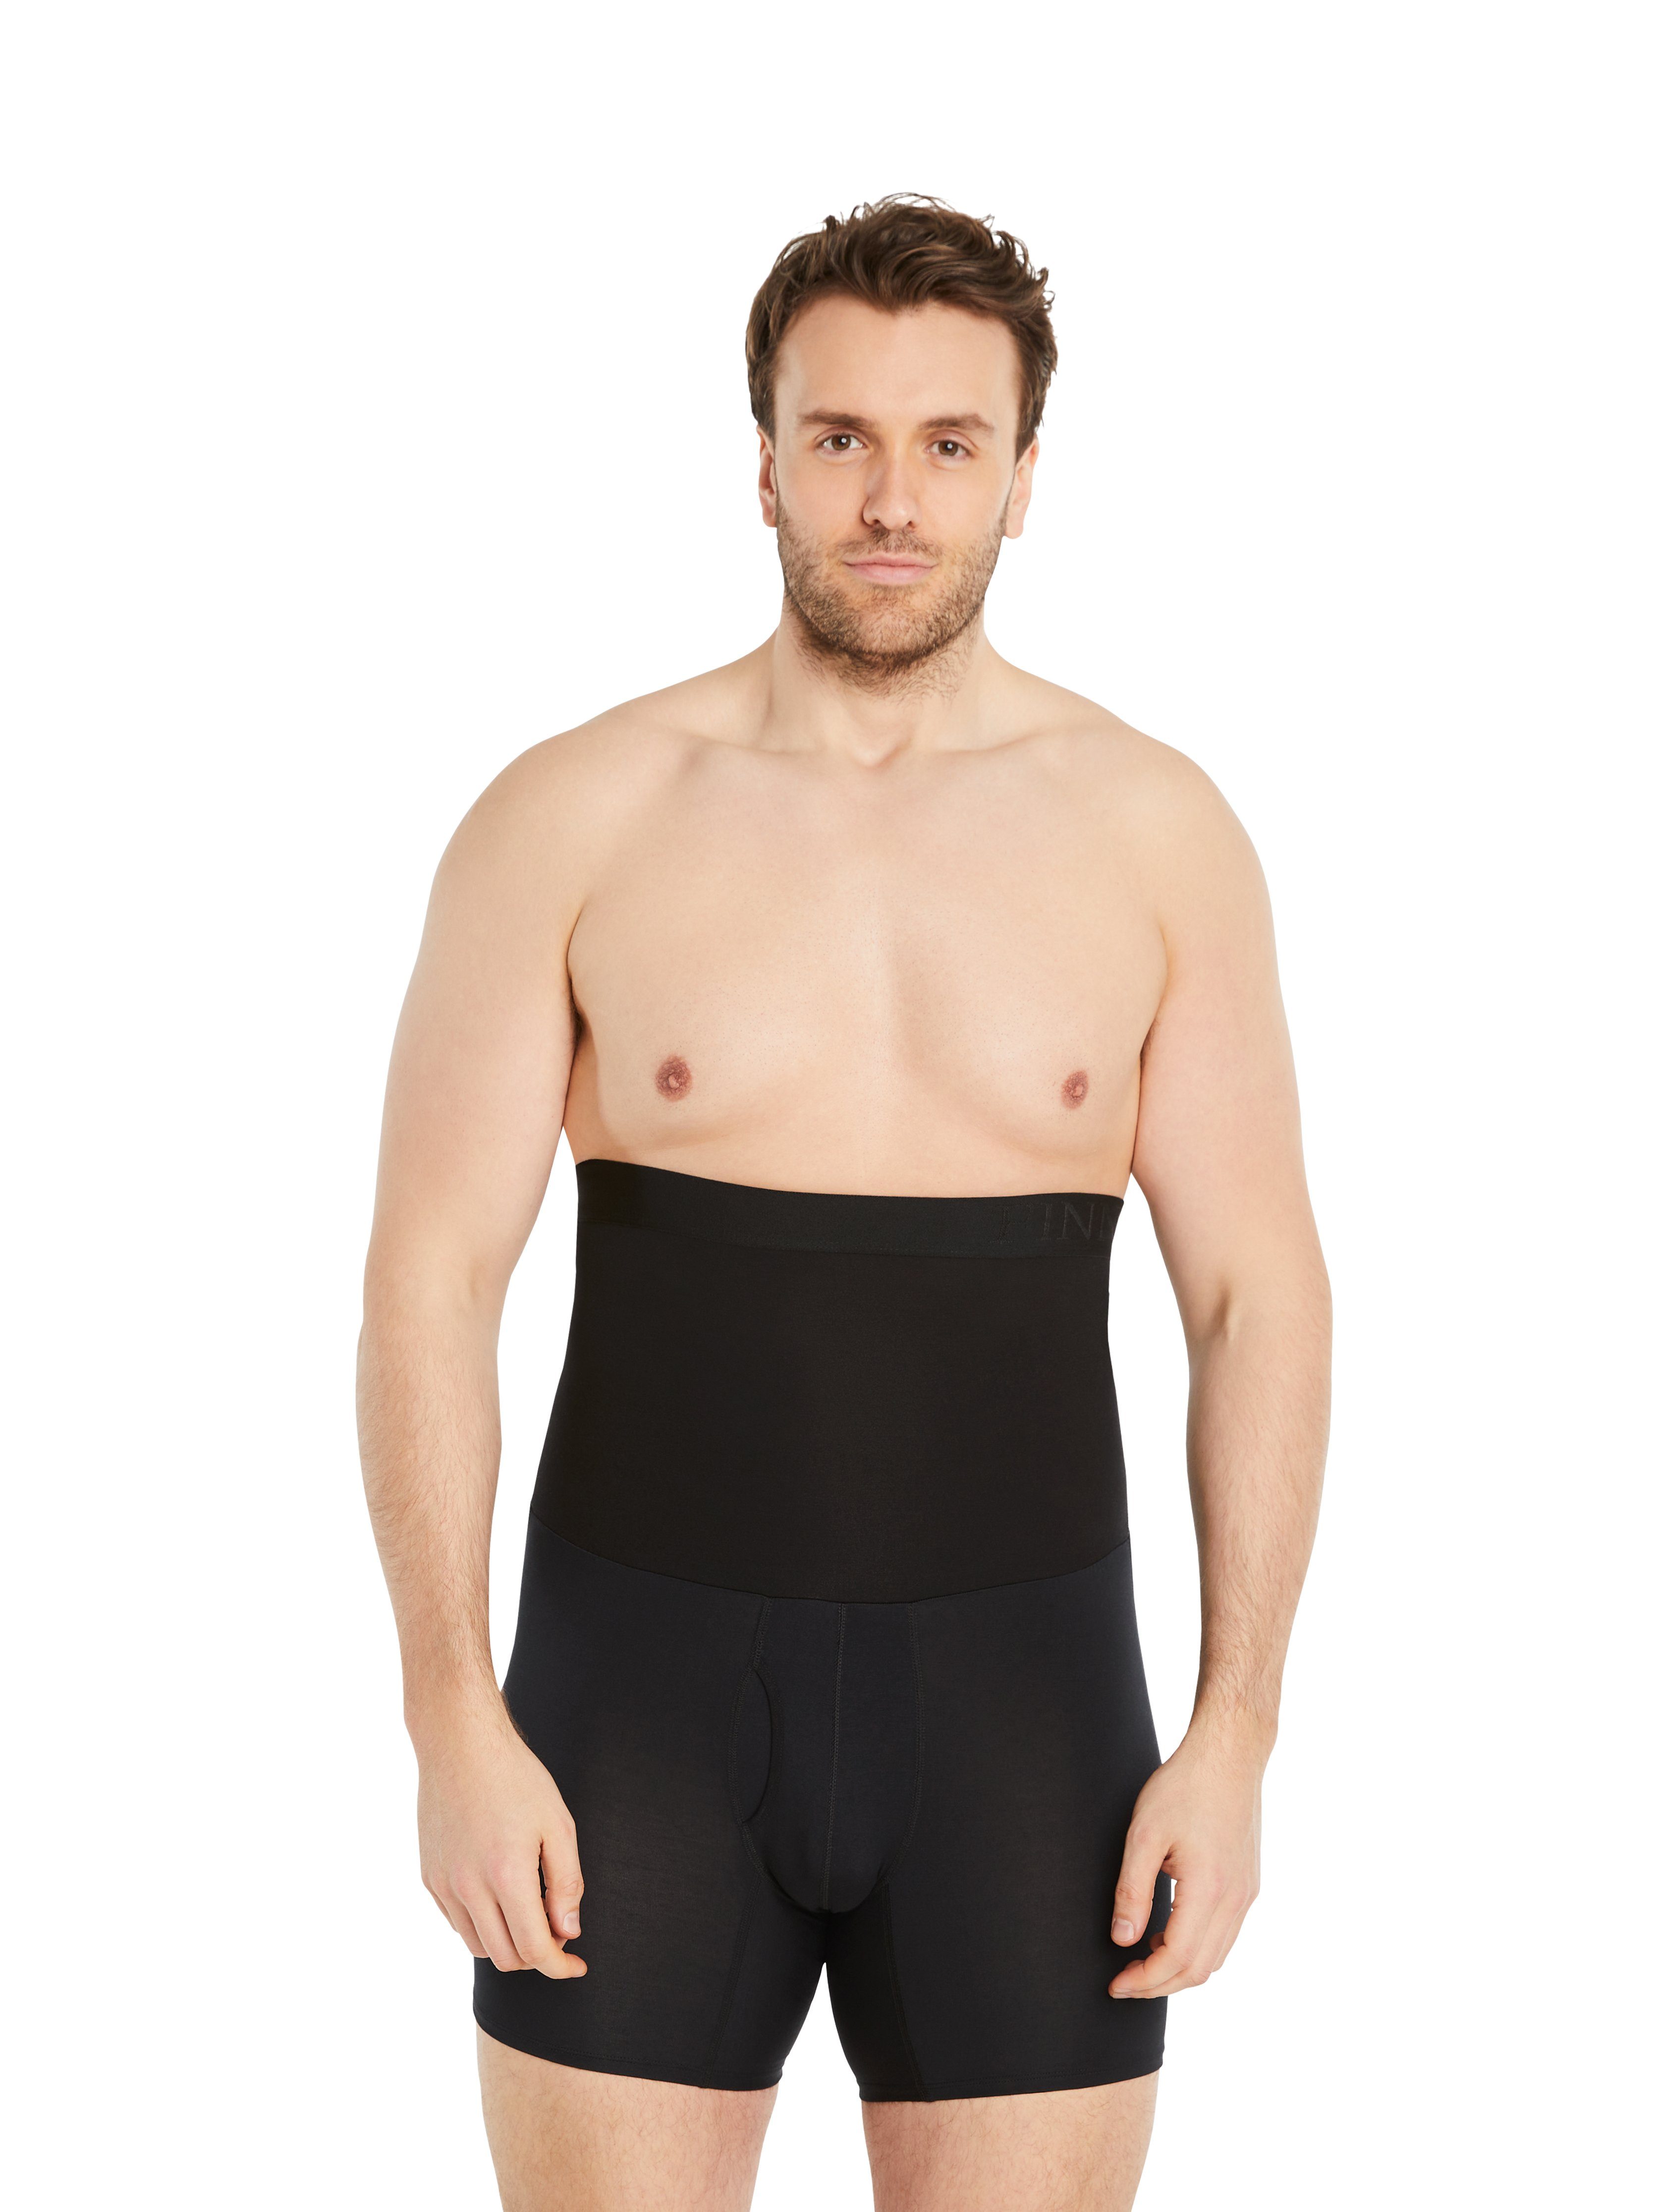 Schwarz Kompressions-Shorts extra Herren Design Shapinghose FINN Kompression, weniger starke Kleidergröße Shapewear eine